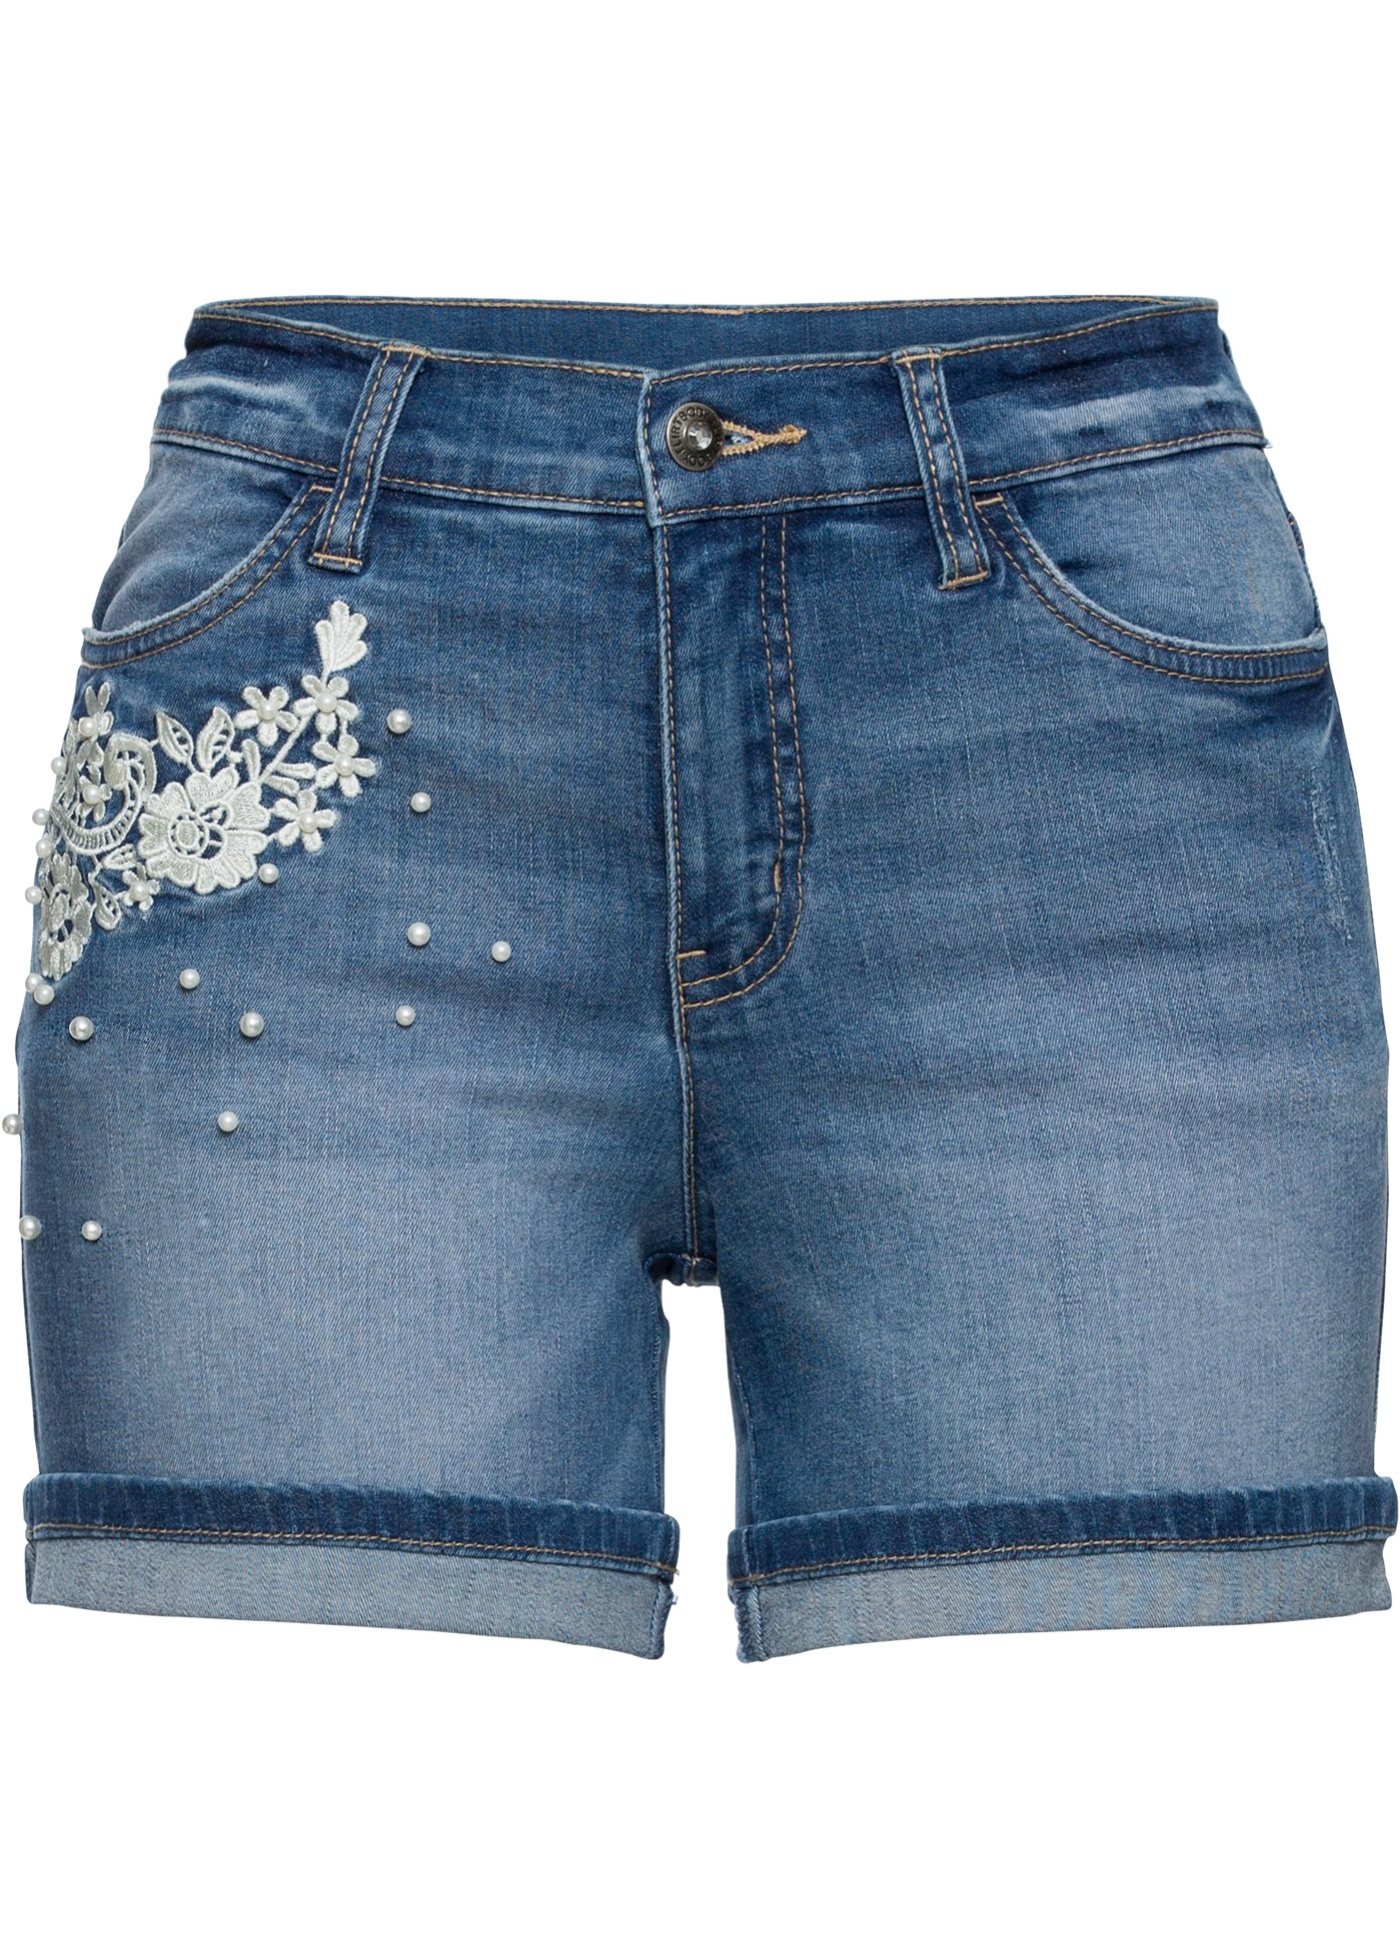 Jeans-Shorts mit Verzierung von bonprix